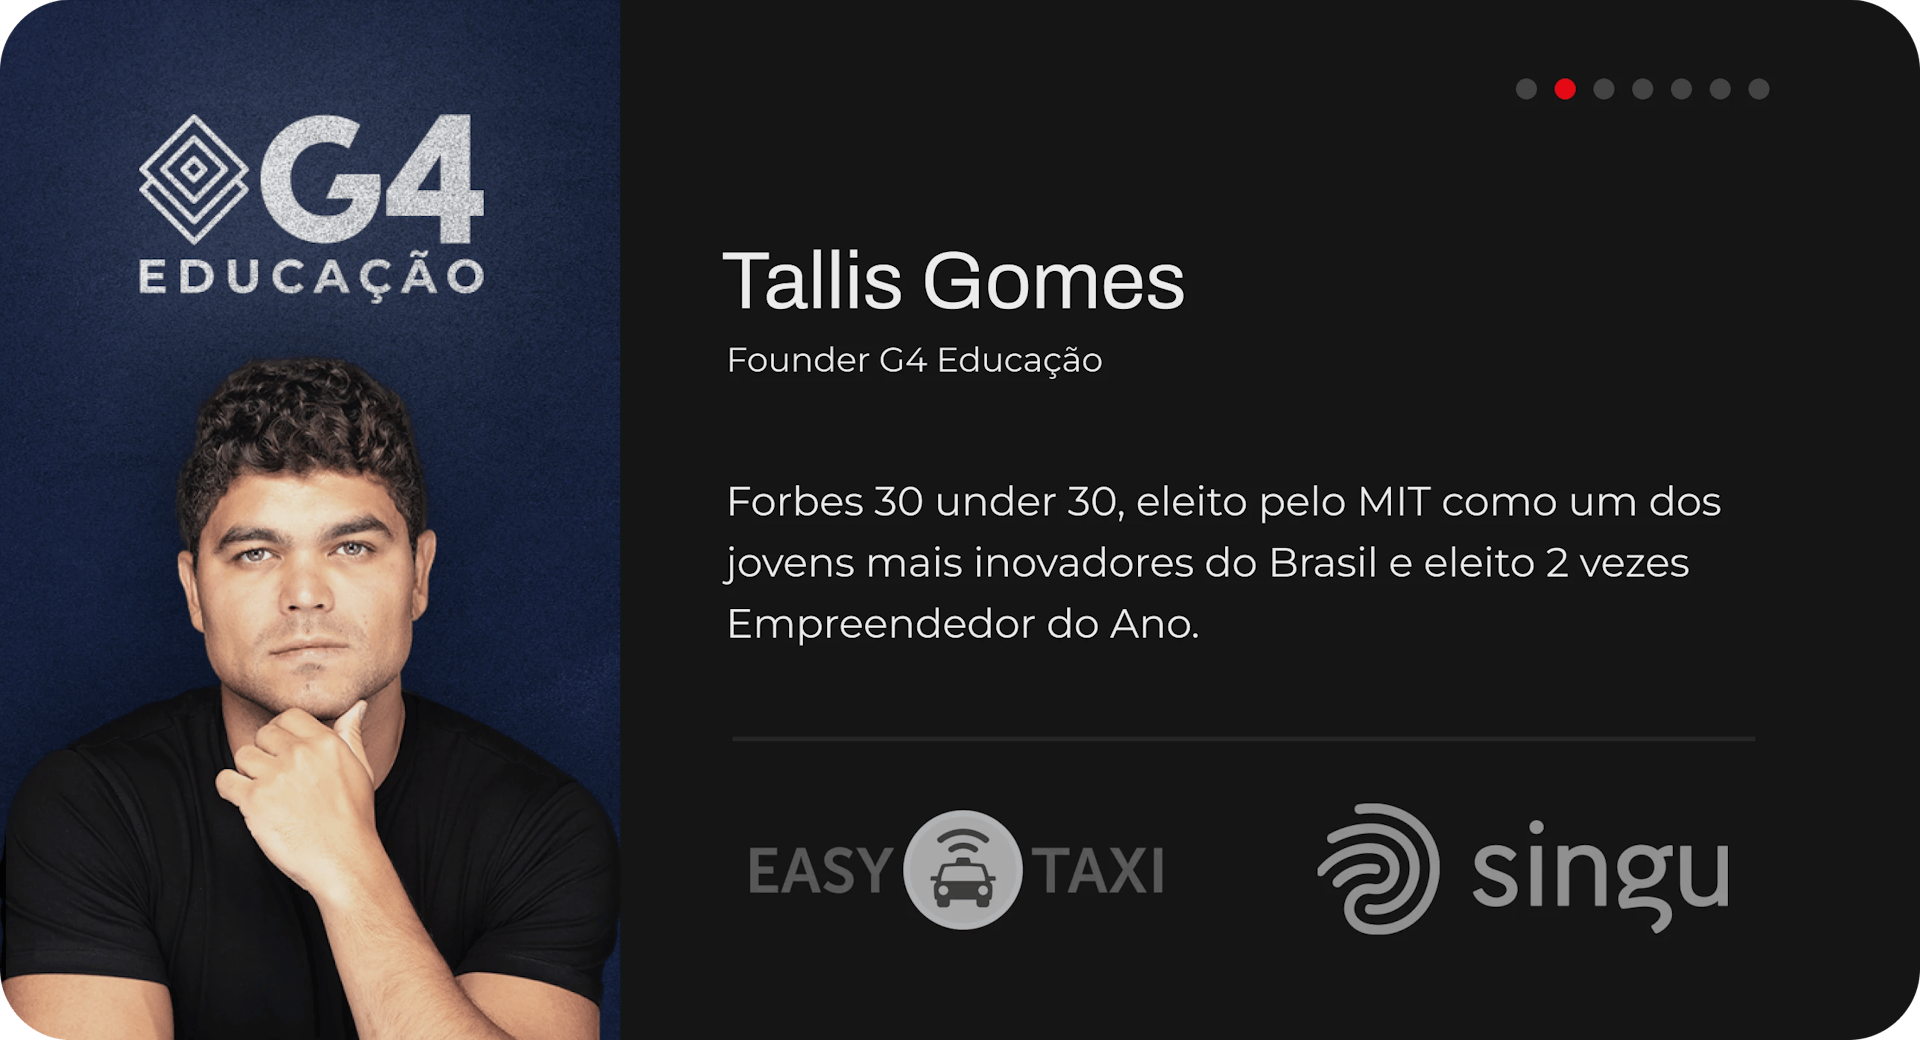 Tallis Gomes